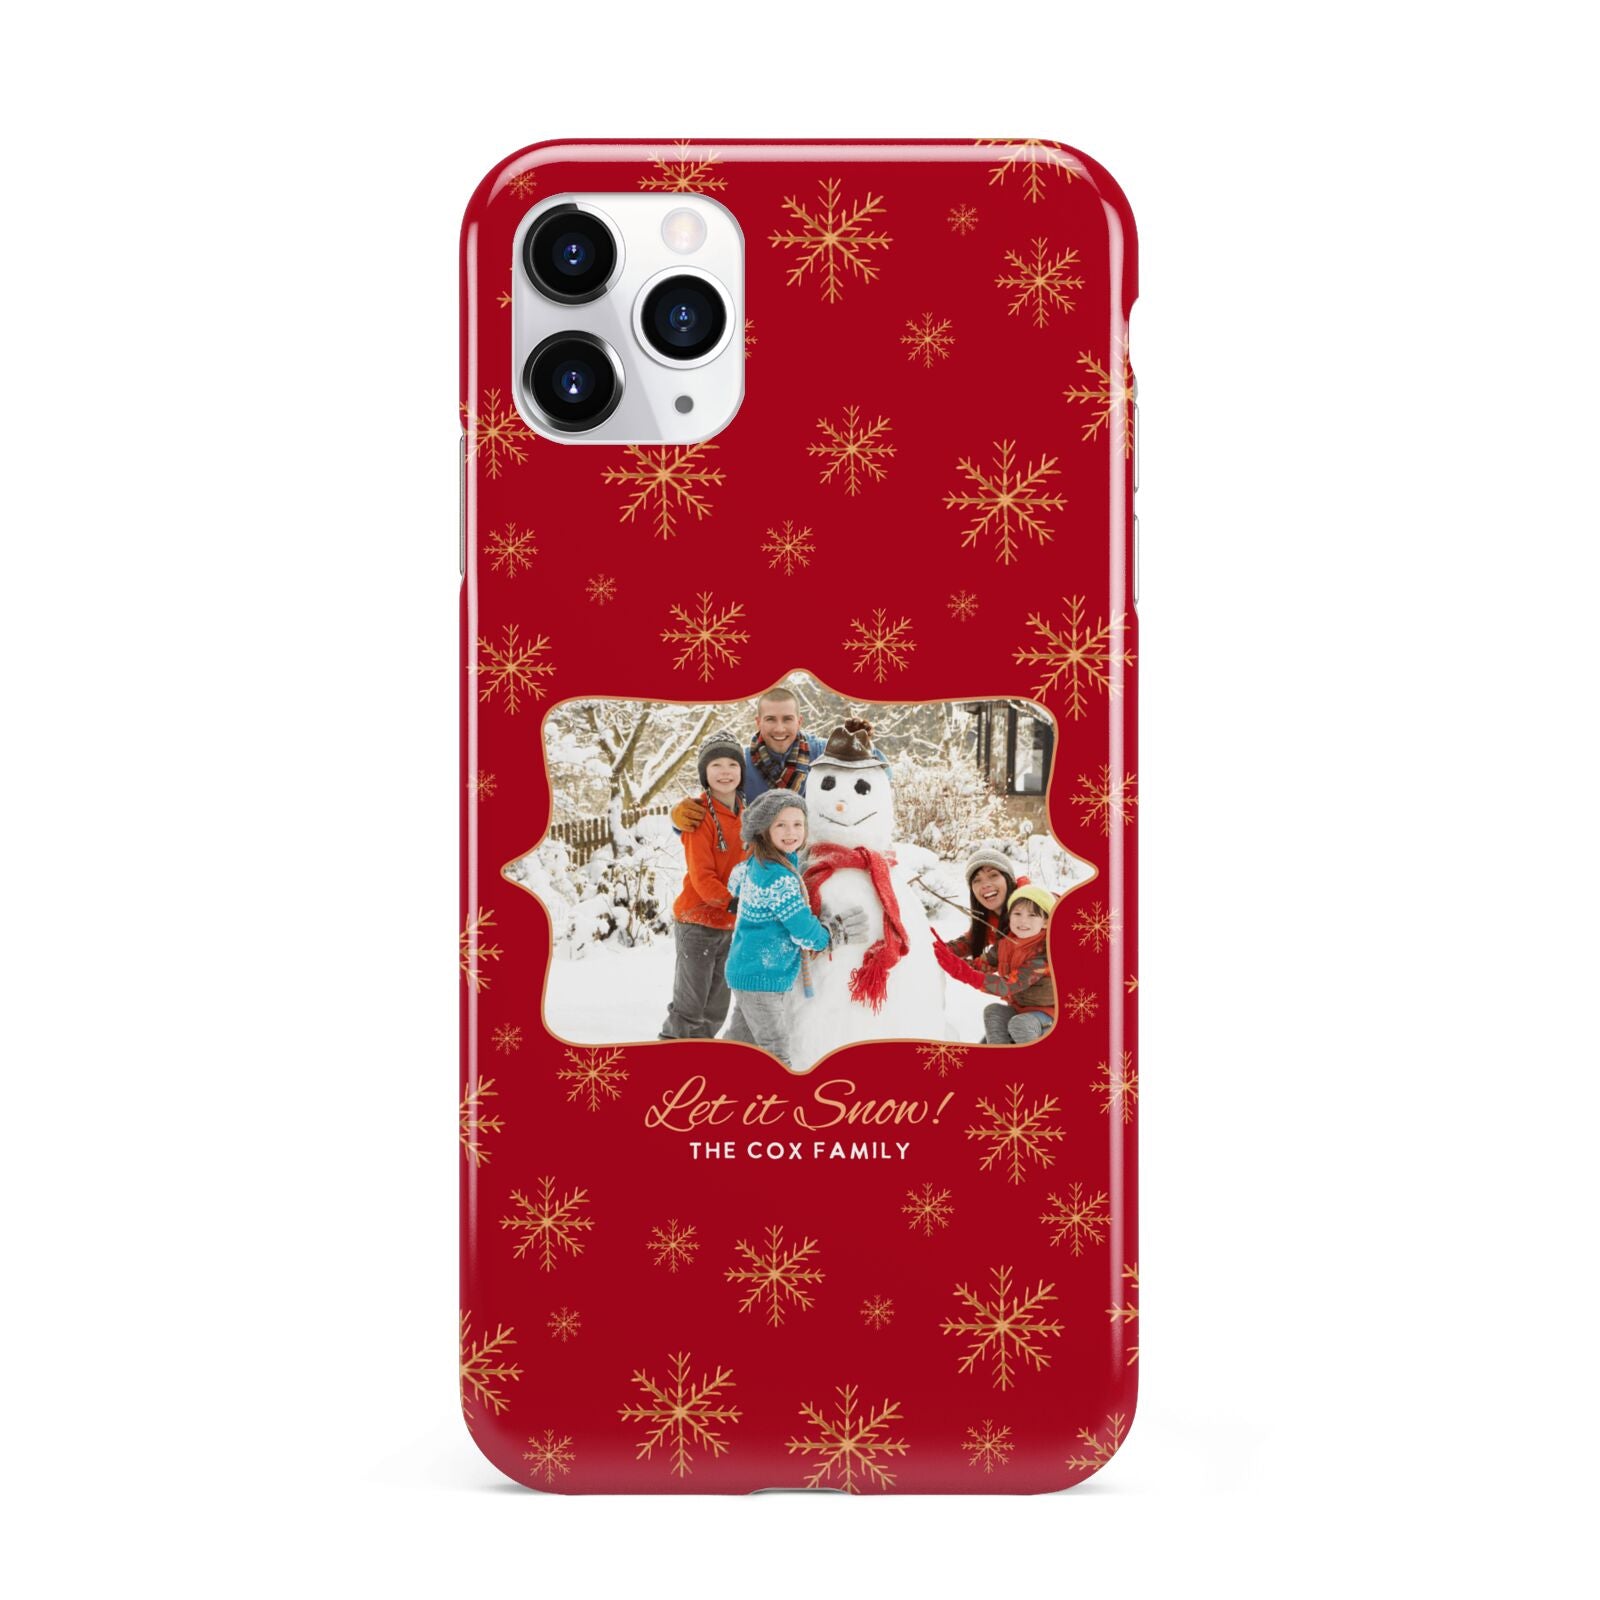 Let it Snow Christmas Photo Upload iPhone 11 Pro Max 3D Tough Case